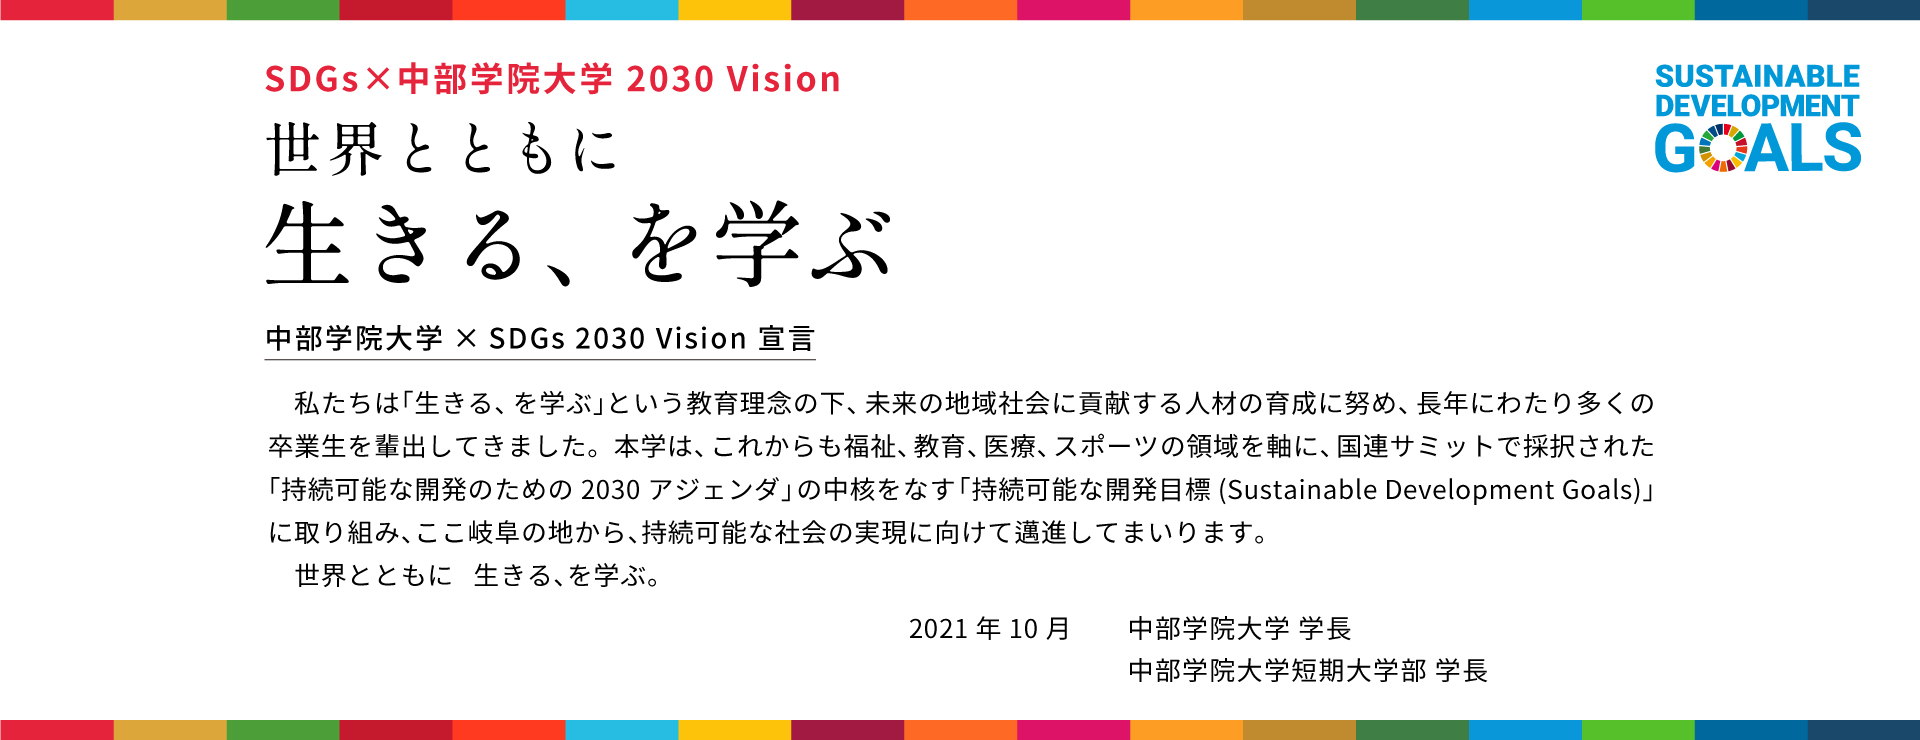 野球 賭博 アプリ
×SDGs 2030 Vision 宣言